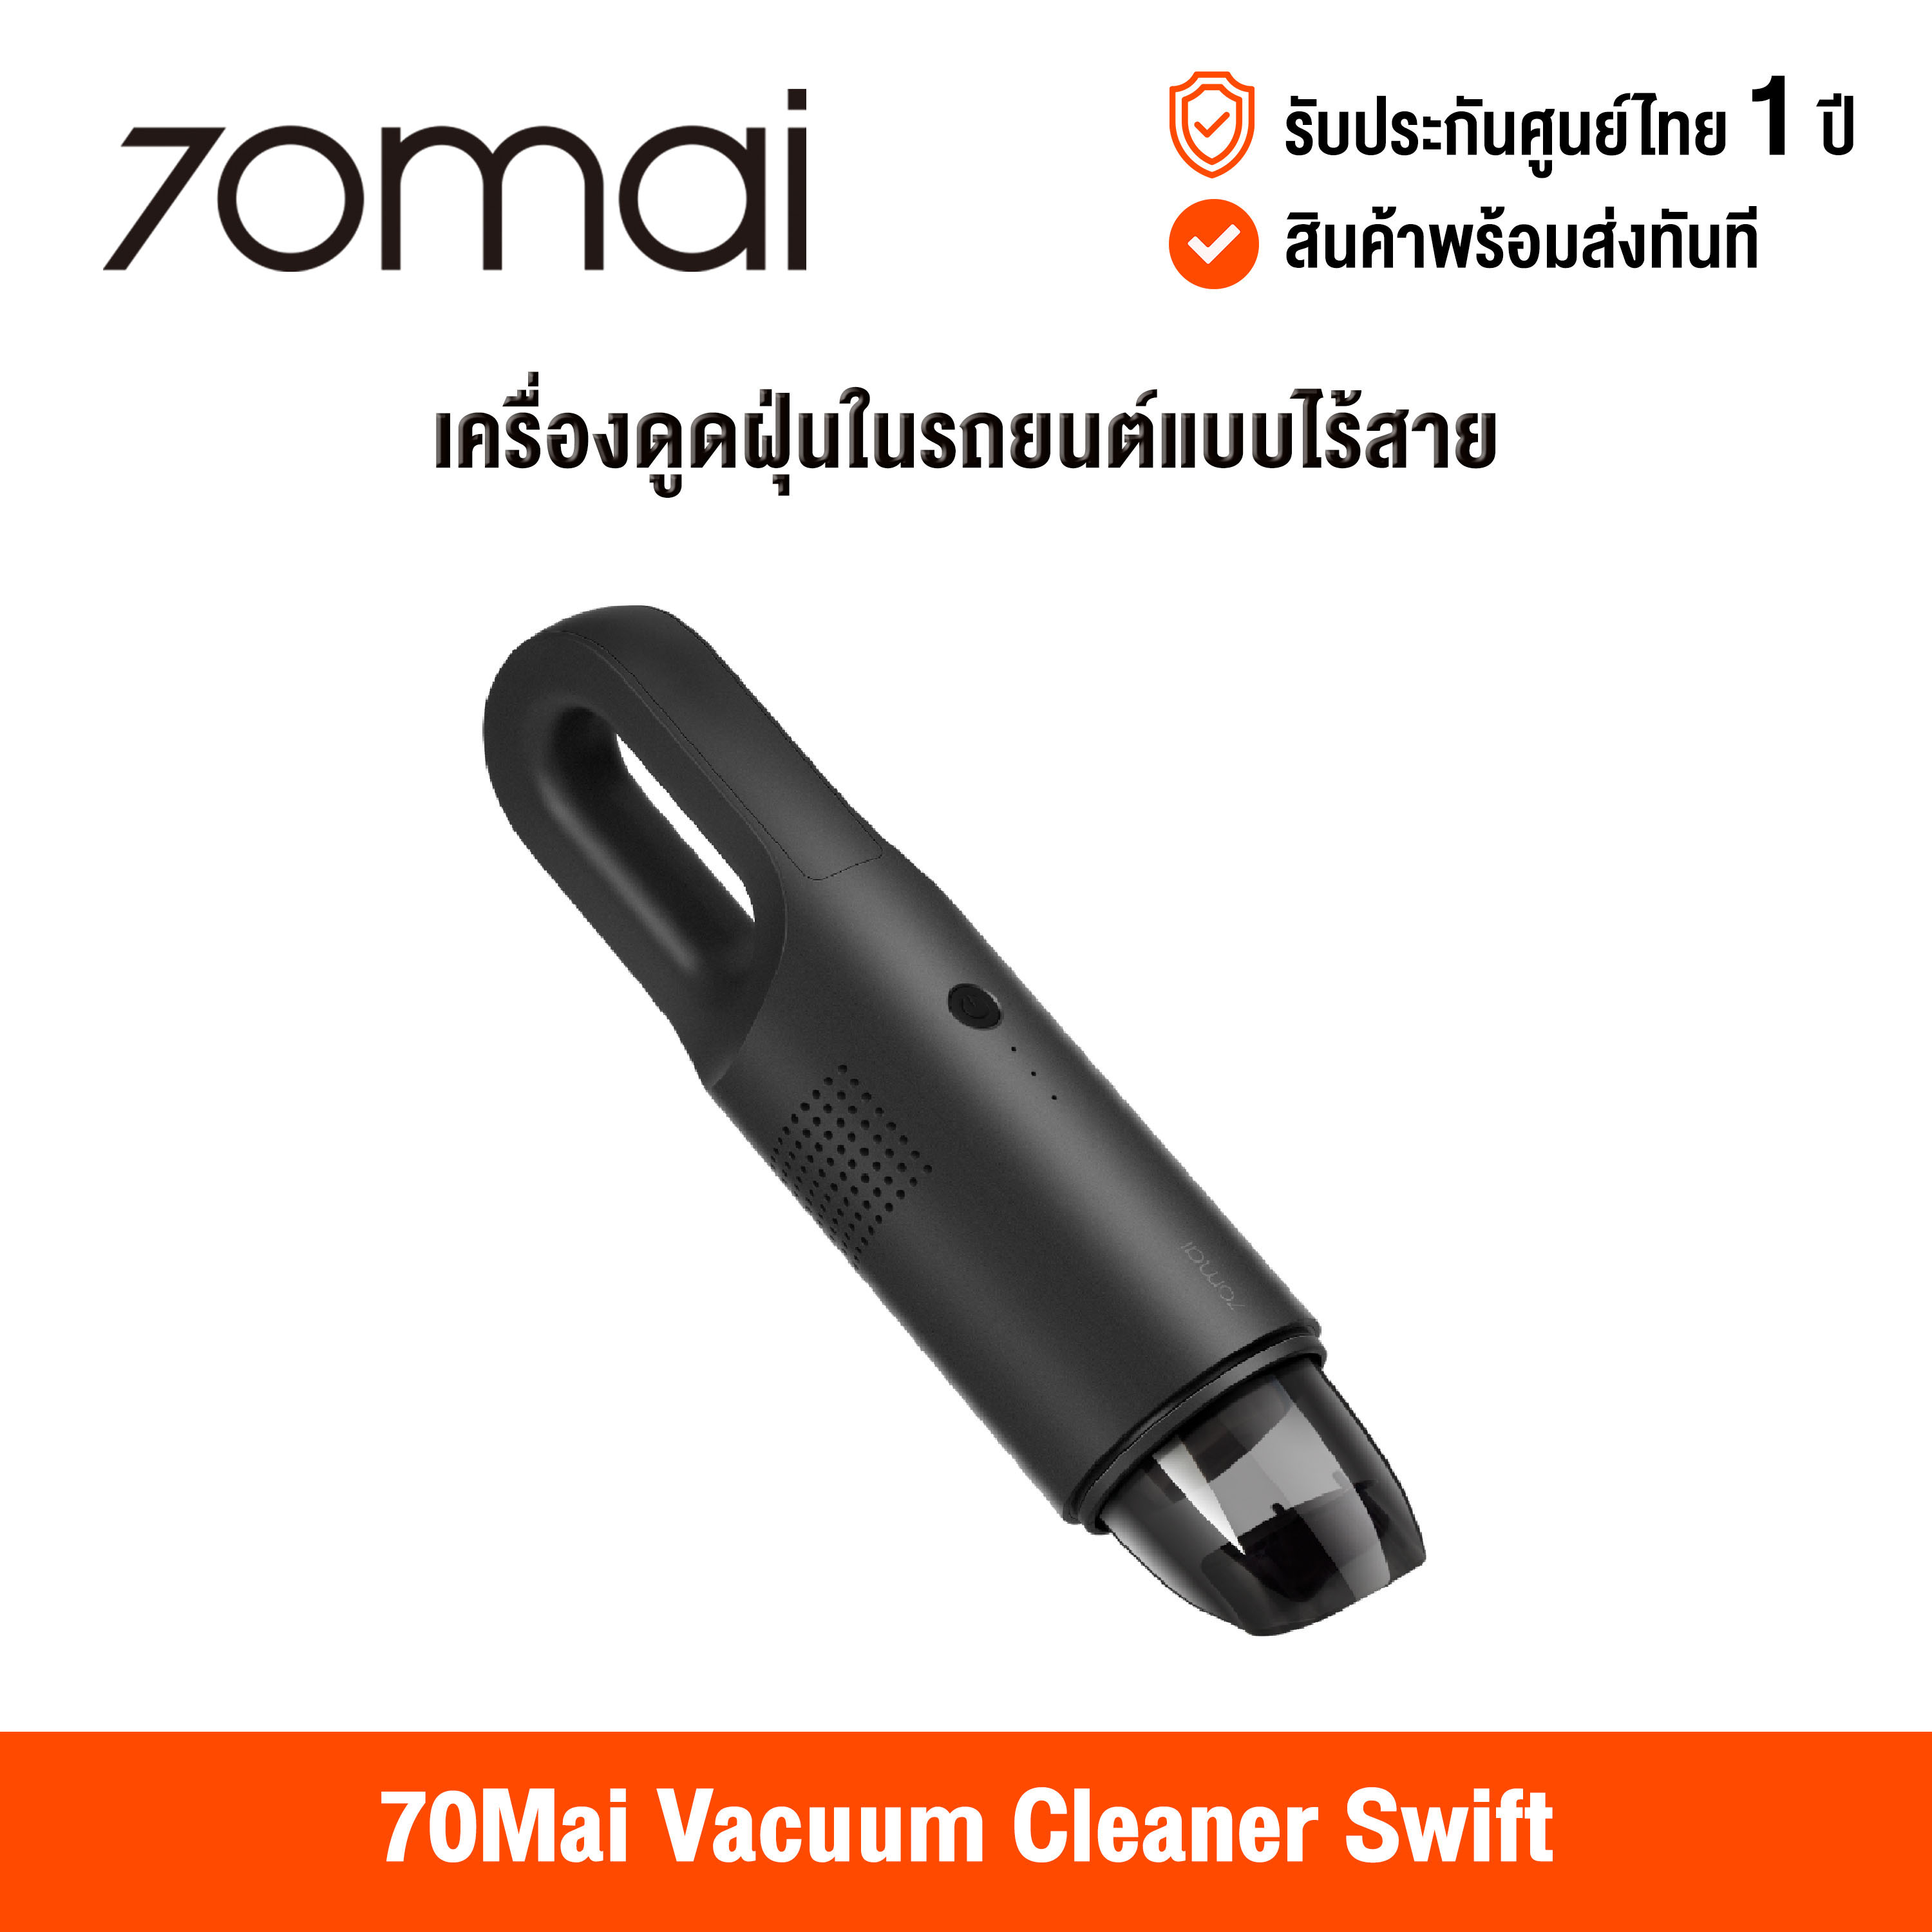 [ศูนย์ไทย] 70Mai Vacuum Cleaner Swift (Global Version) เสี่ยวหมี่ เครื่องดูดฝุ่นรถยนต์แบบไร้สาย ขนาดพกพา